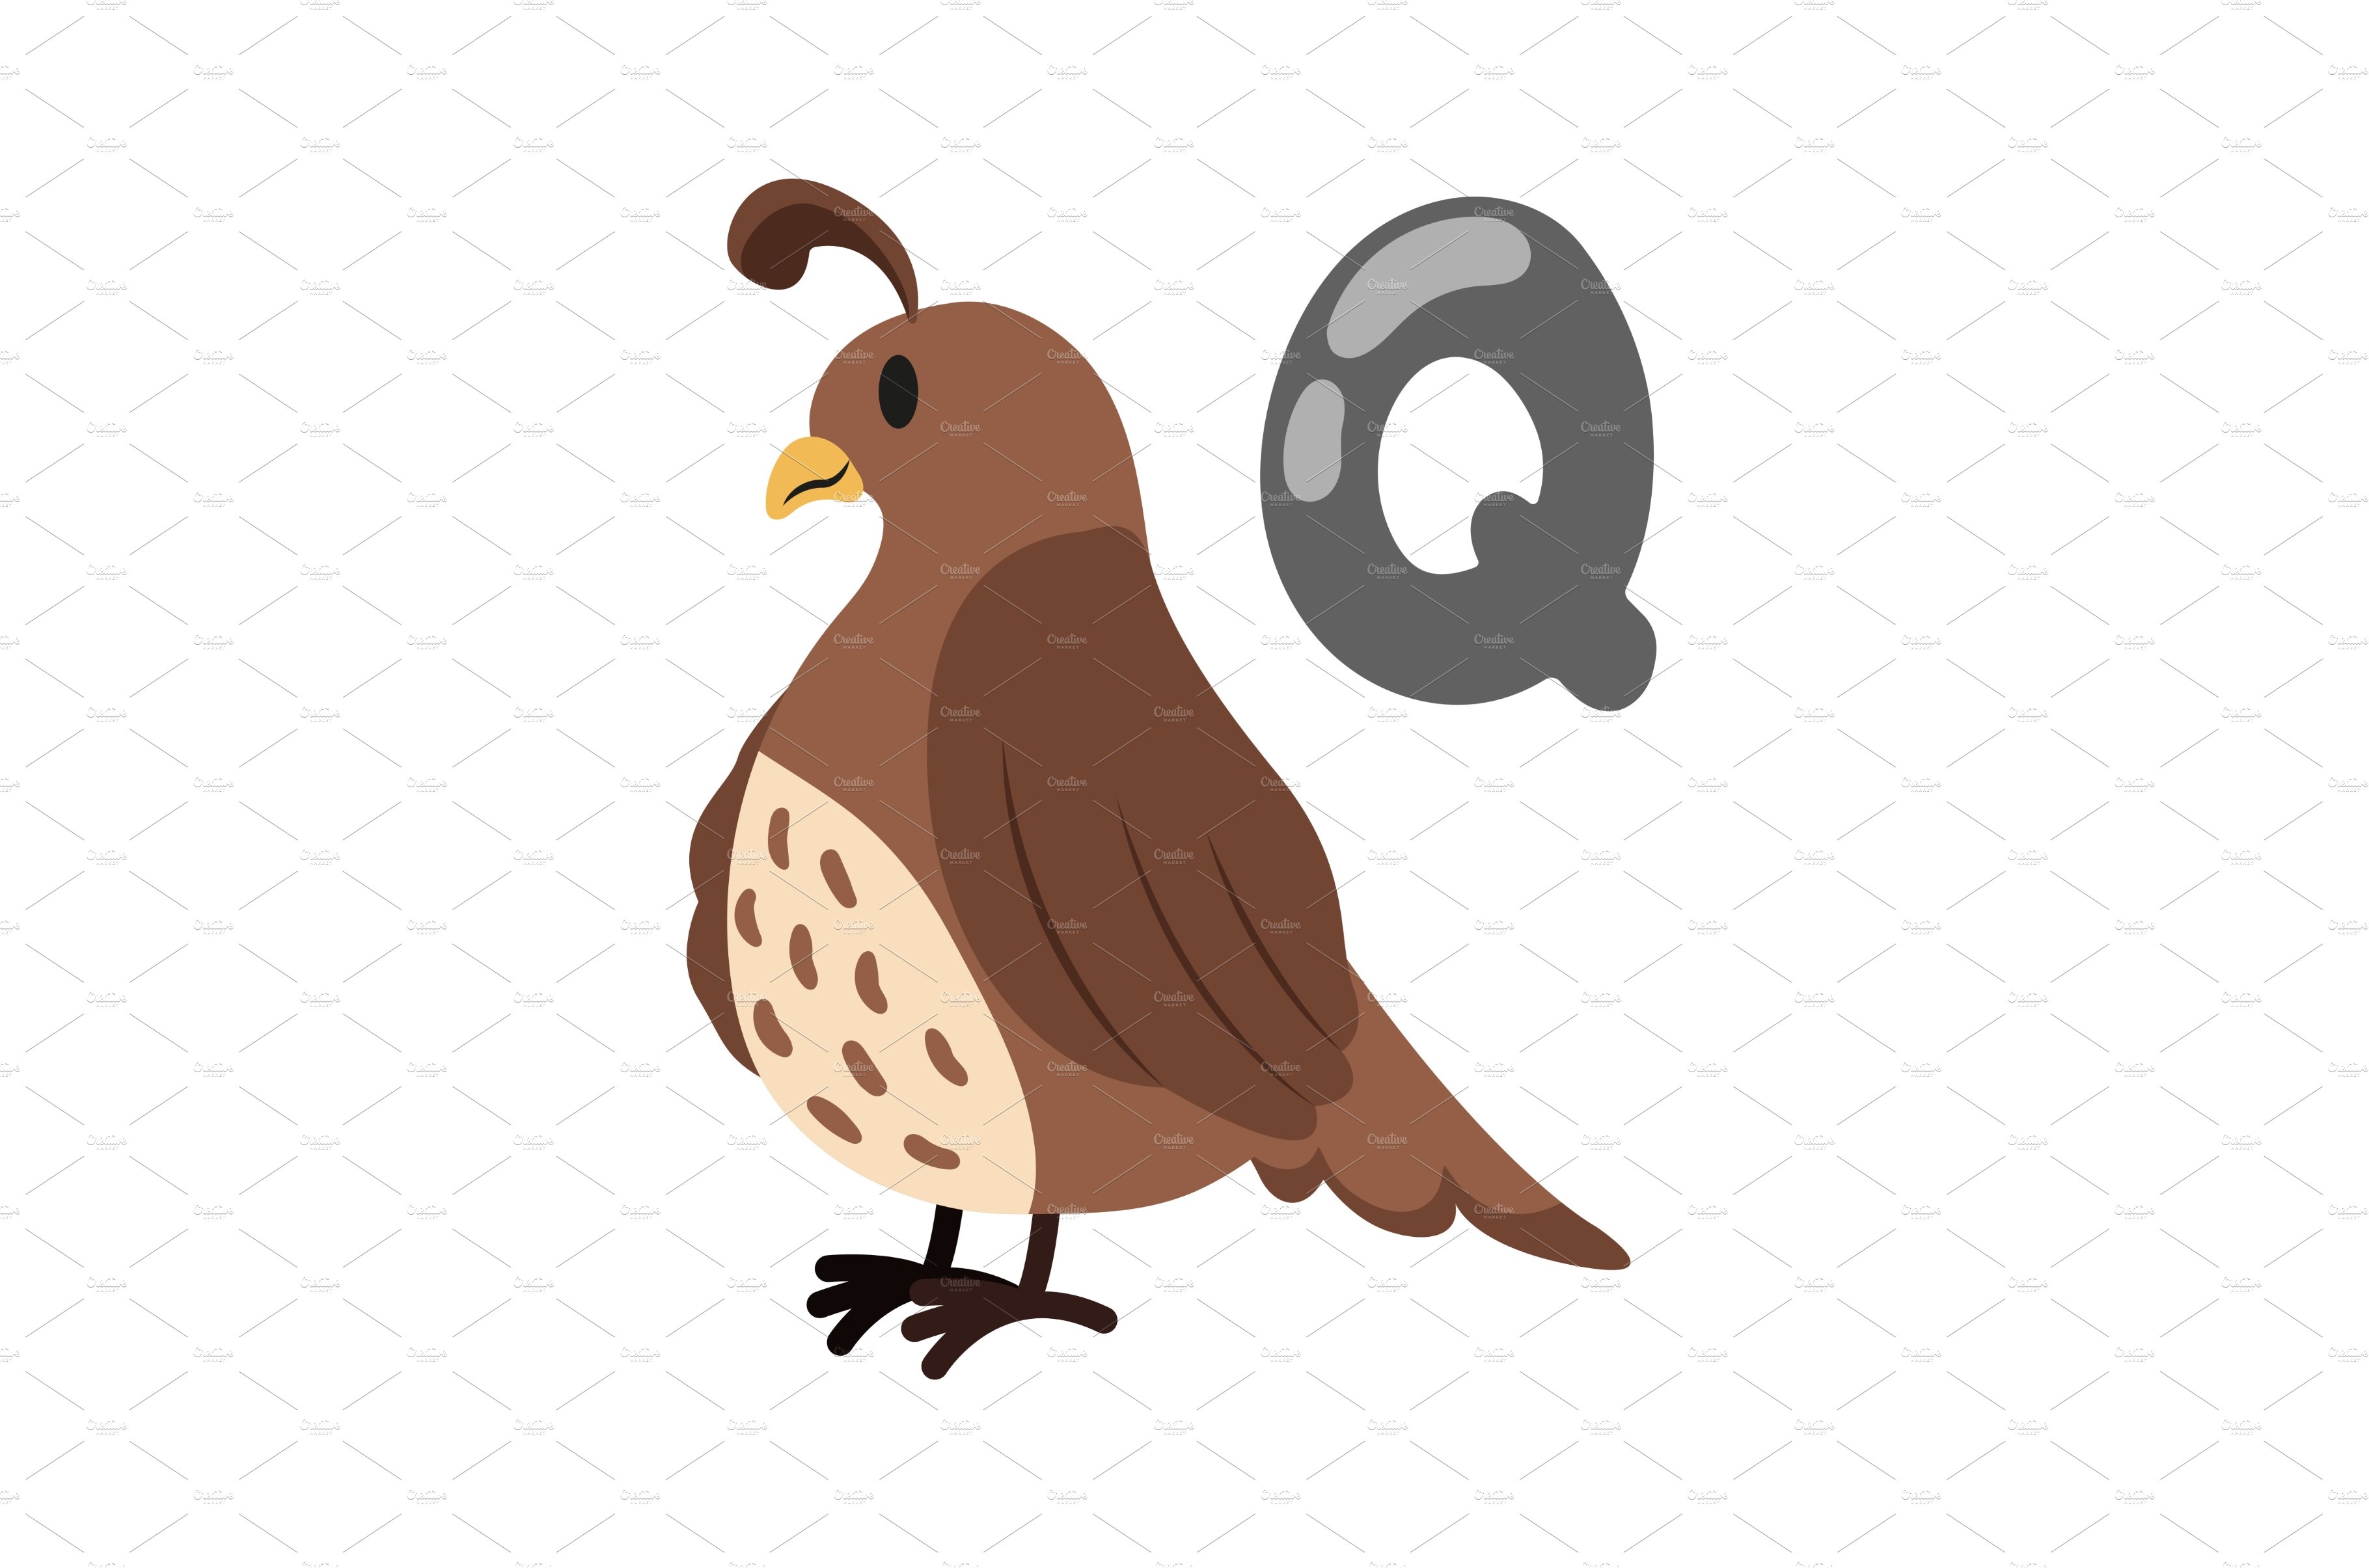 Concept Alphabet Q quail cover image.